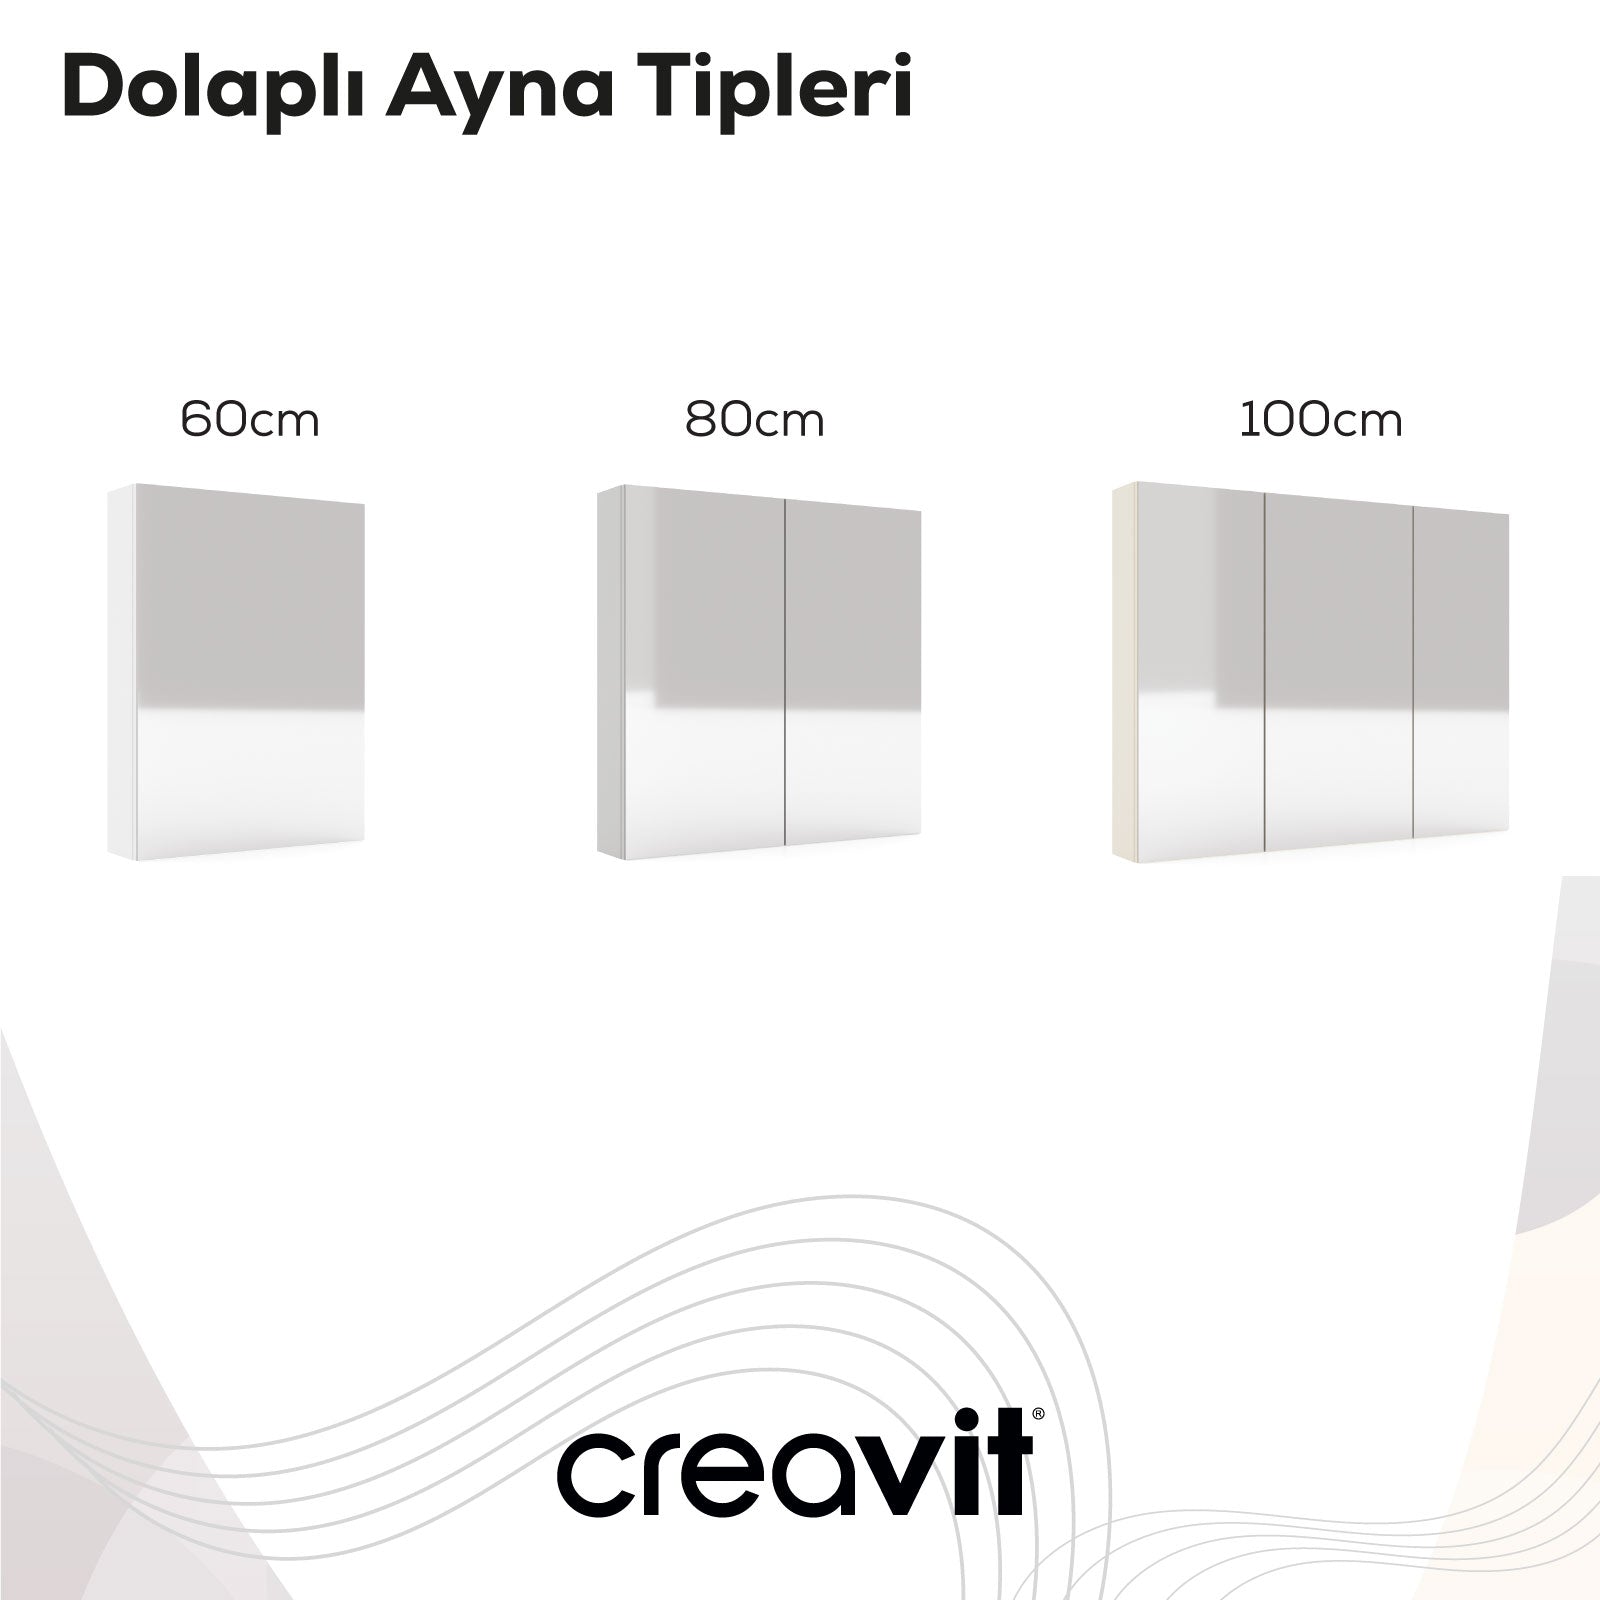 D10 80 cm Melamin Aynalı Dolap Beyaz - Creavit | Banyo Bu Tarafta